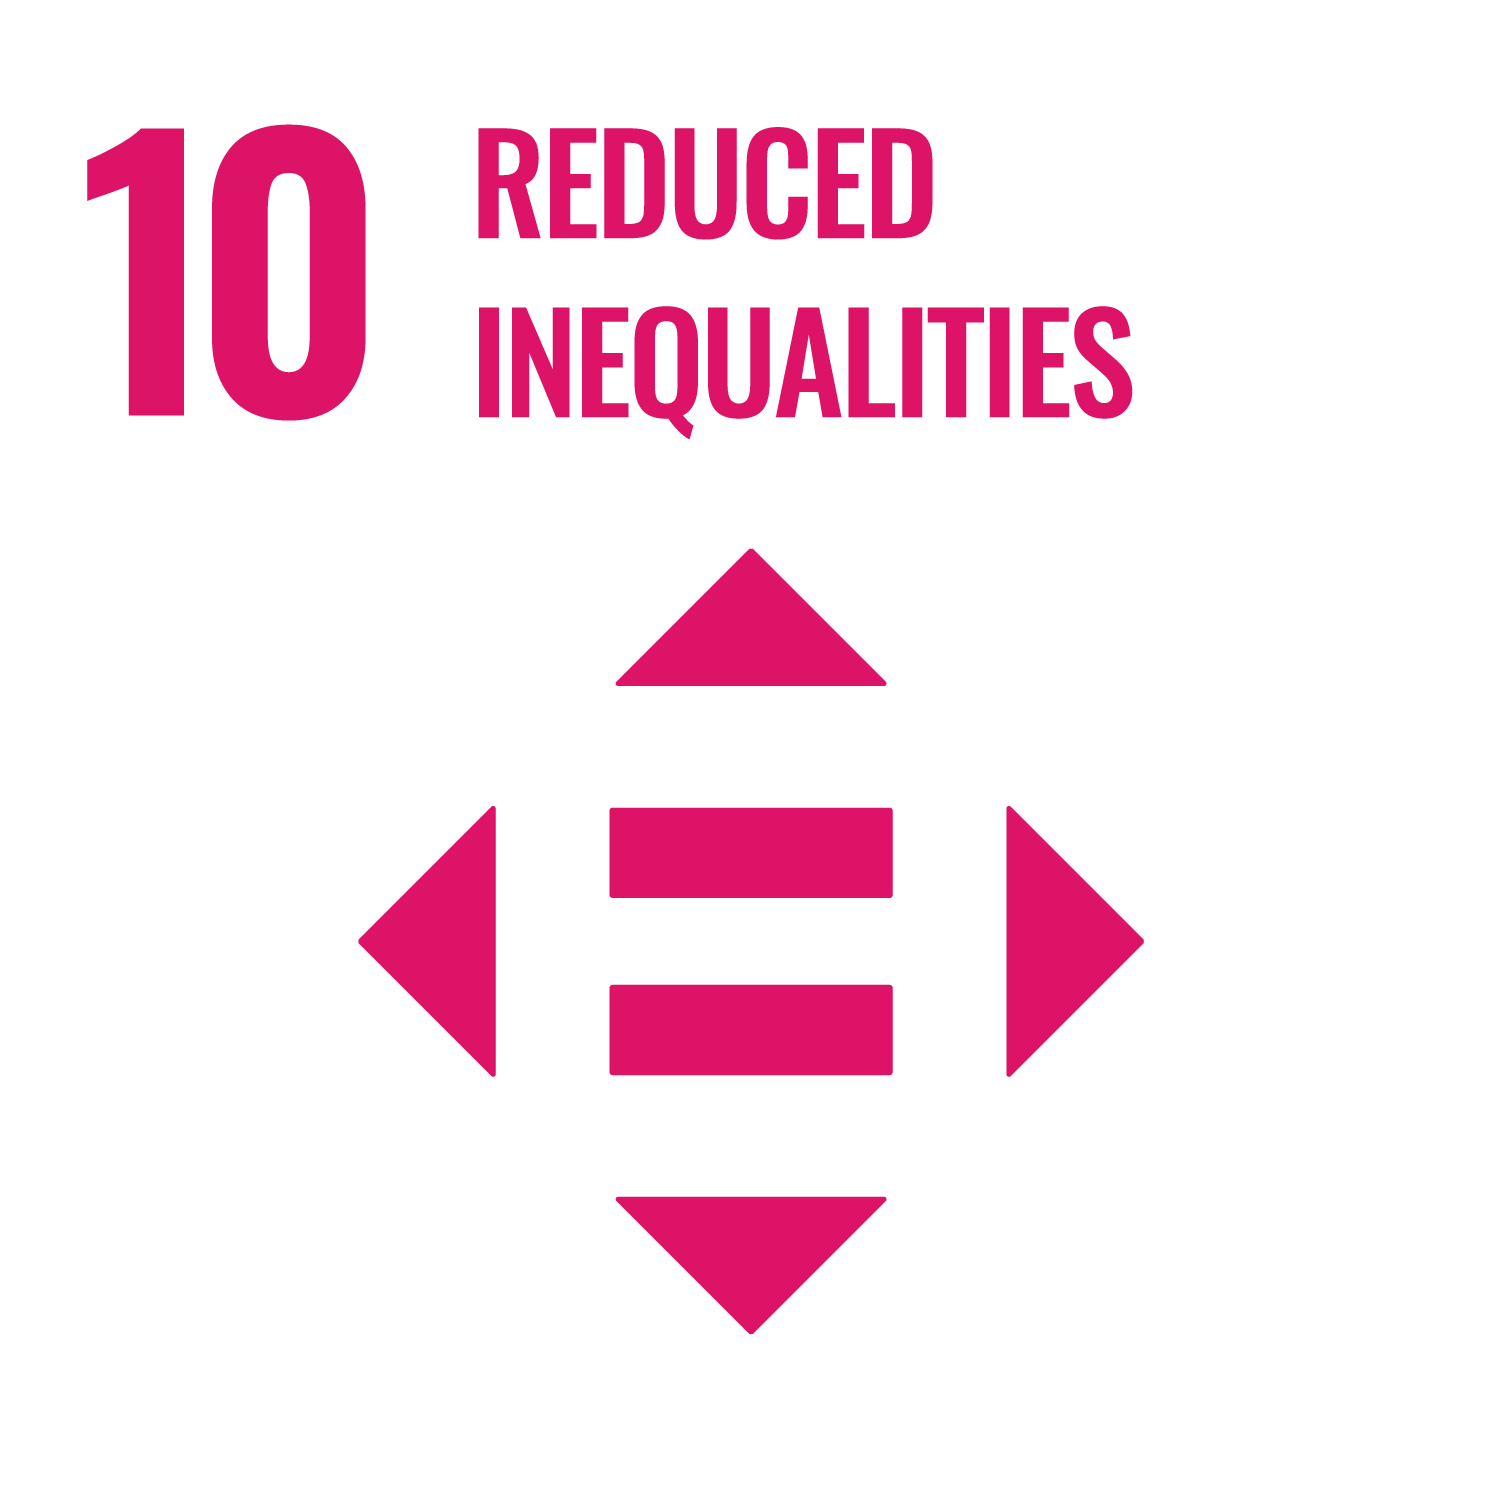 10 UN SDG